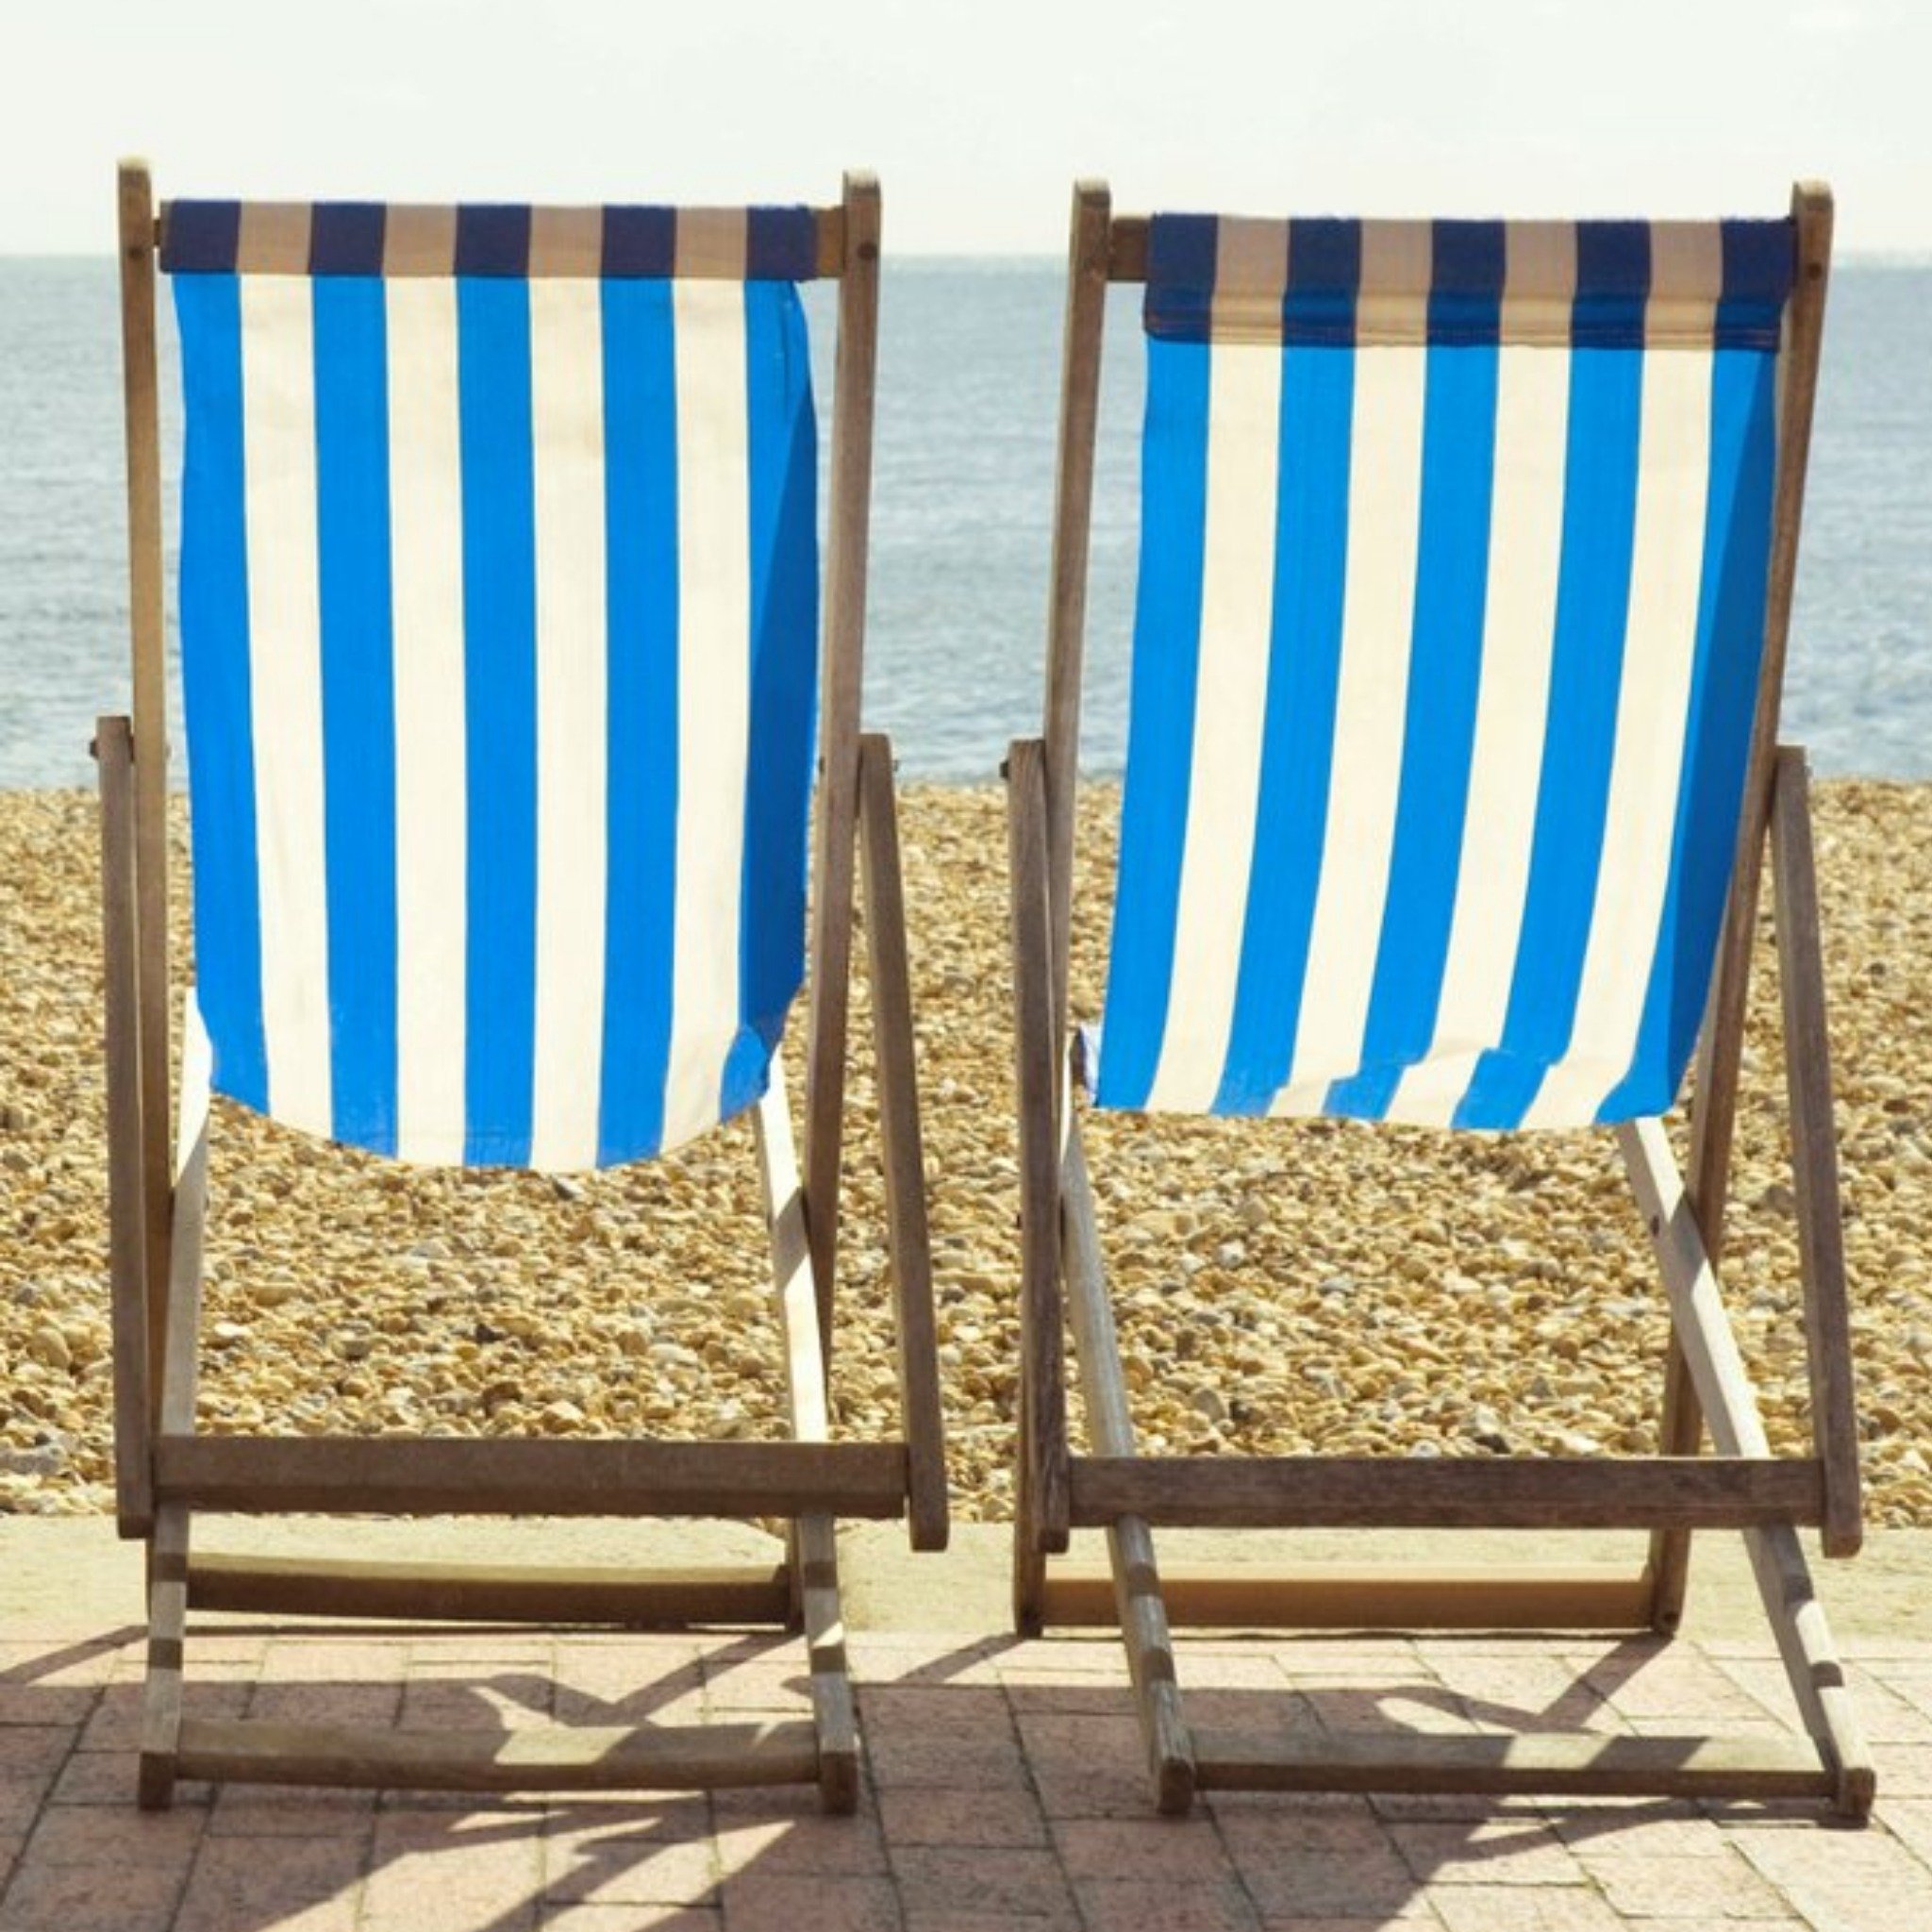 Moonpig Colourful Sandy Beach Deck Chair Photography Card, Large